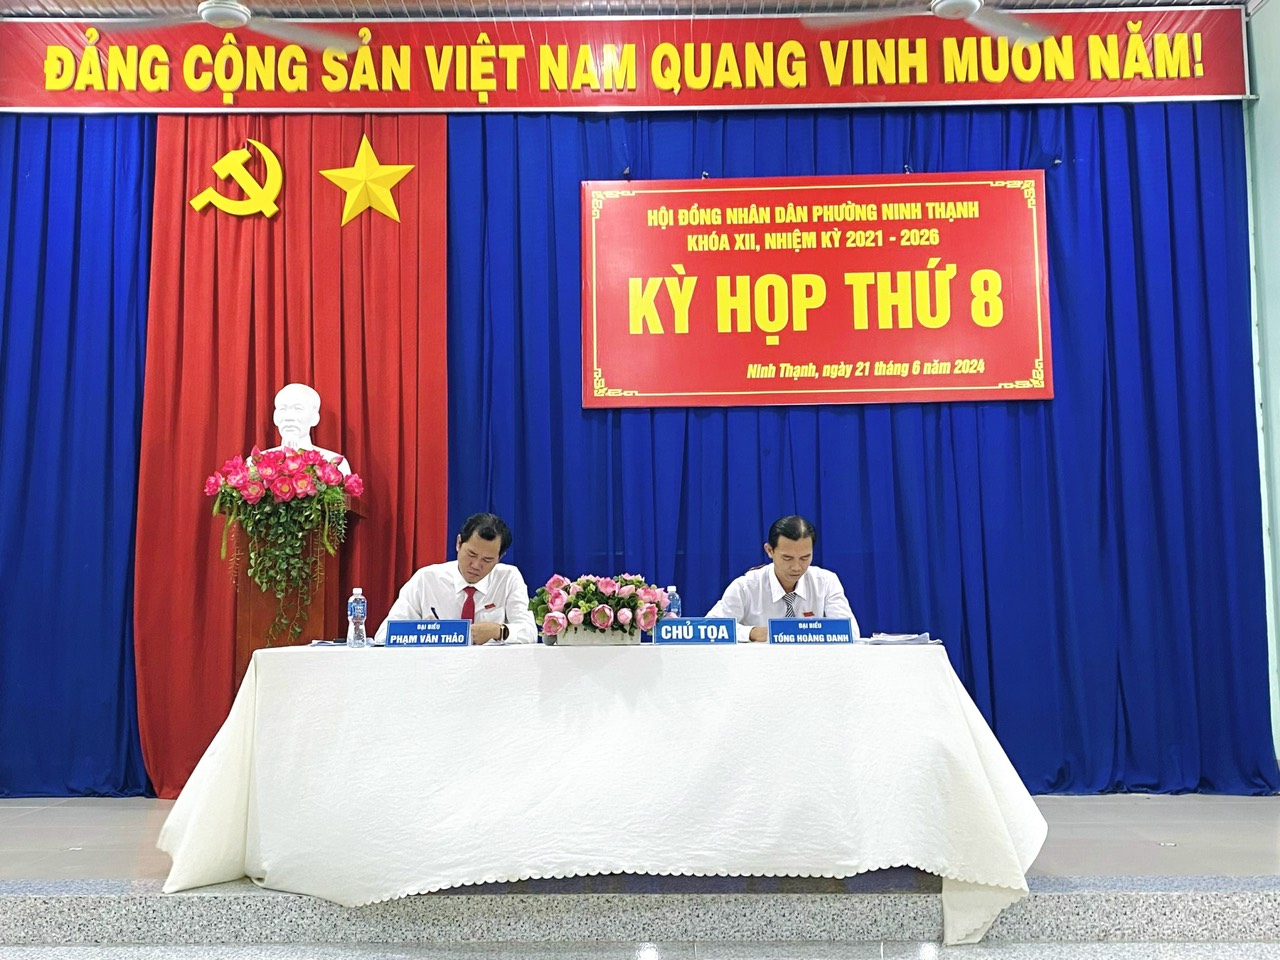 HĐND phường Ninh Thạnh, thành phố Tây Ninh tổ chức kỳ họp thứ 8 HĐND khóa XII, nhiệm kỳ 2021-2026.